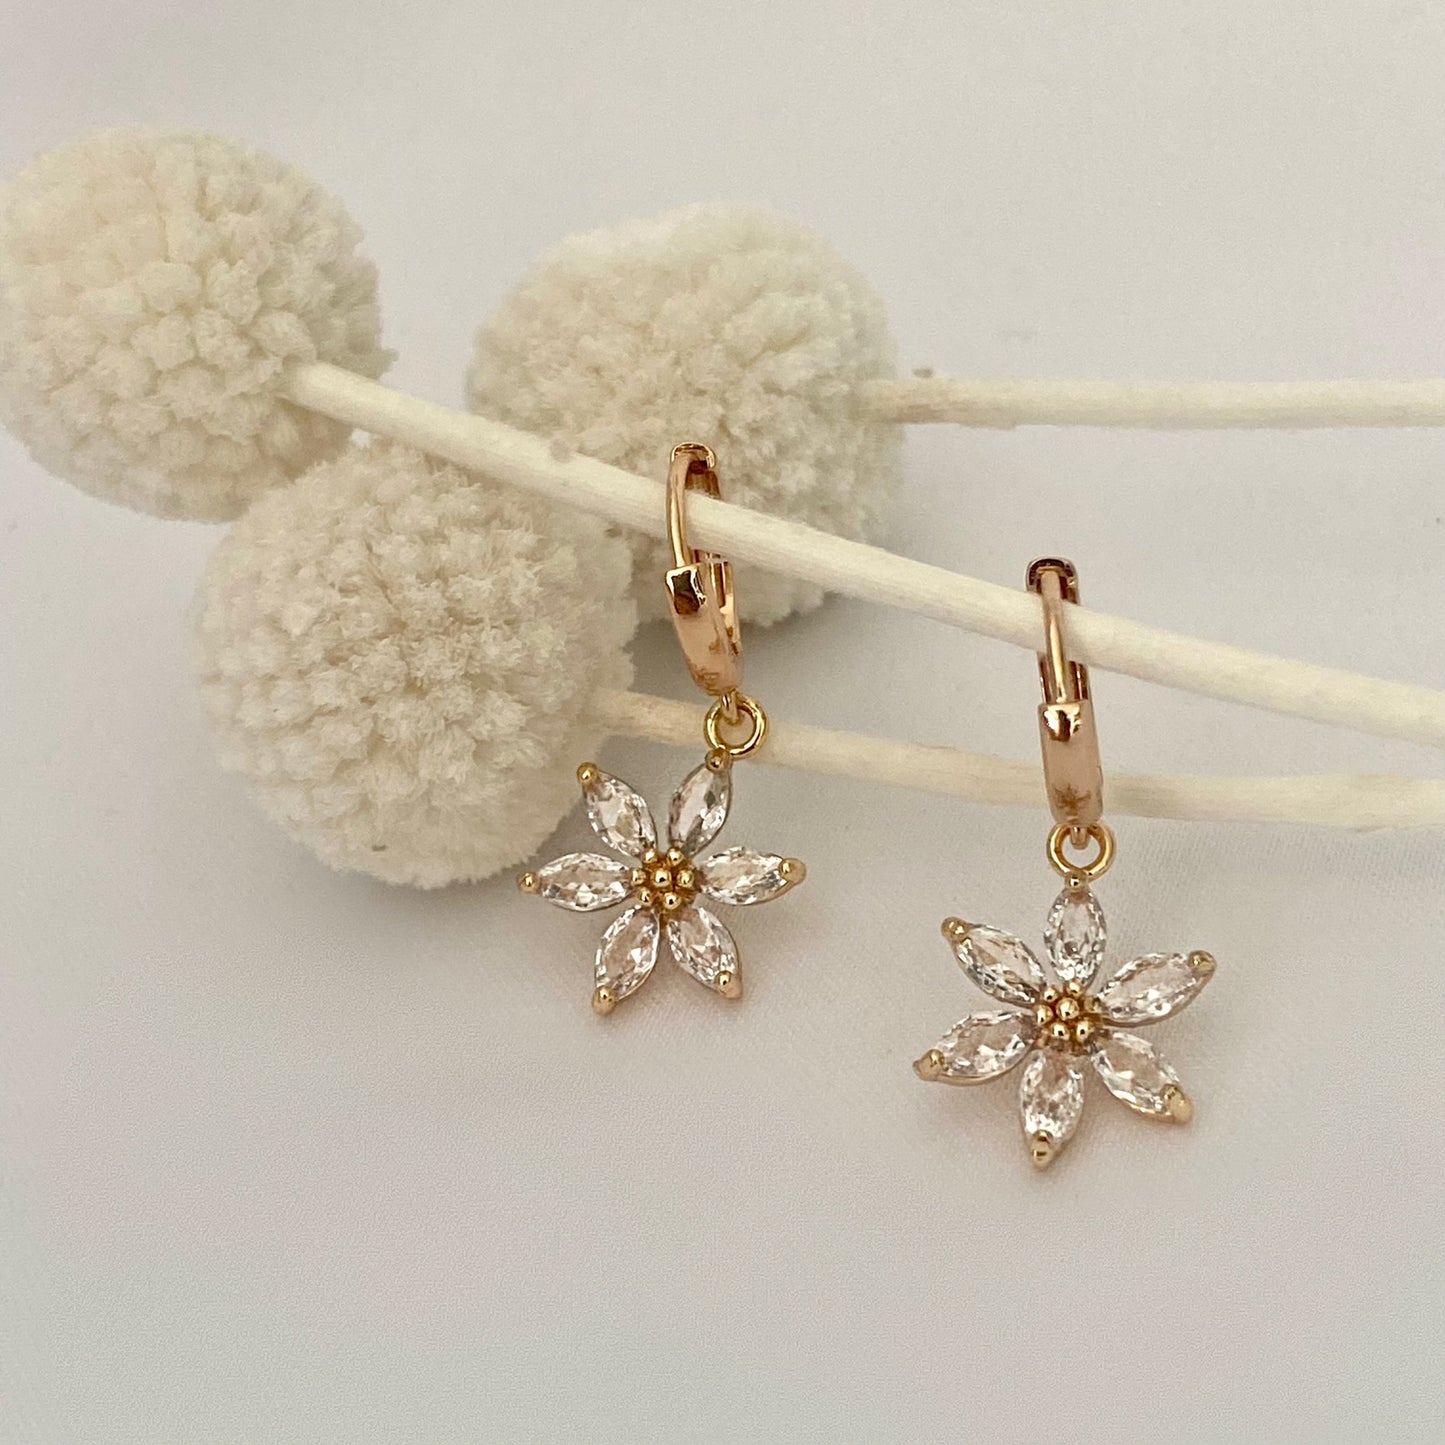 Handmade Champagne Gold Boho Flower Dangle Earrings